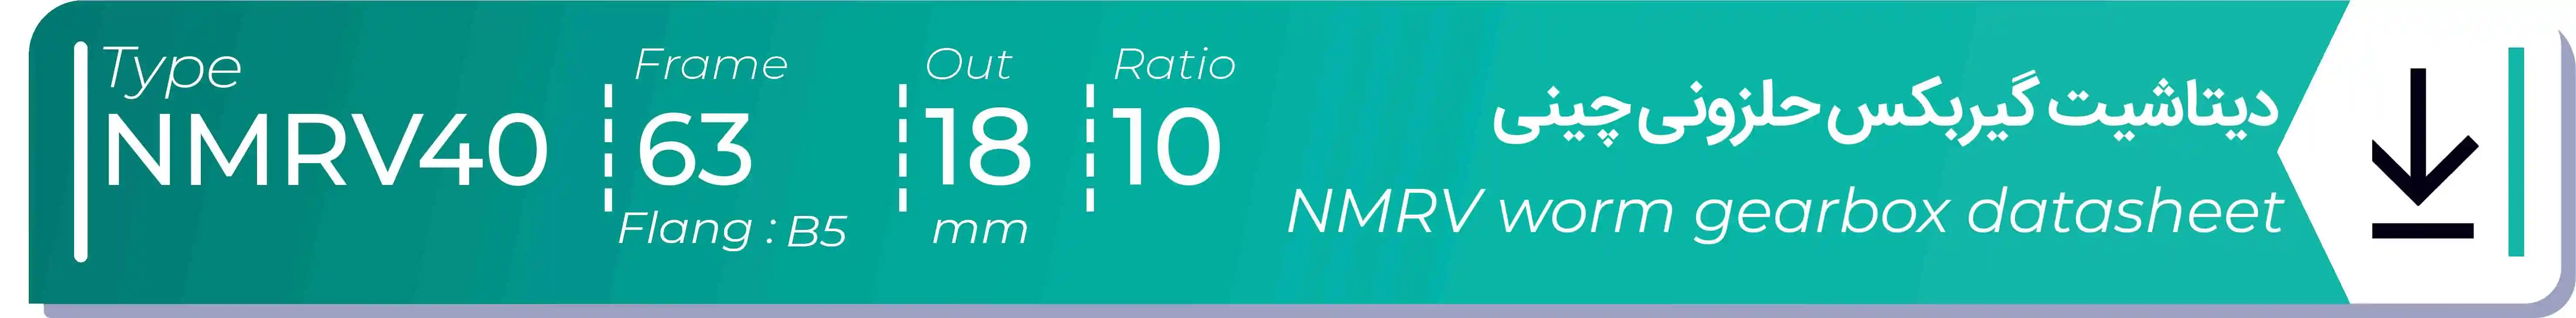  دیتاشیت و مشخصات فنی گیربکس حلزونی چینی   NMRV40  -  با خروجی 18- میلی متر و نسبت10 و فریم 63